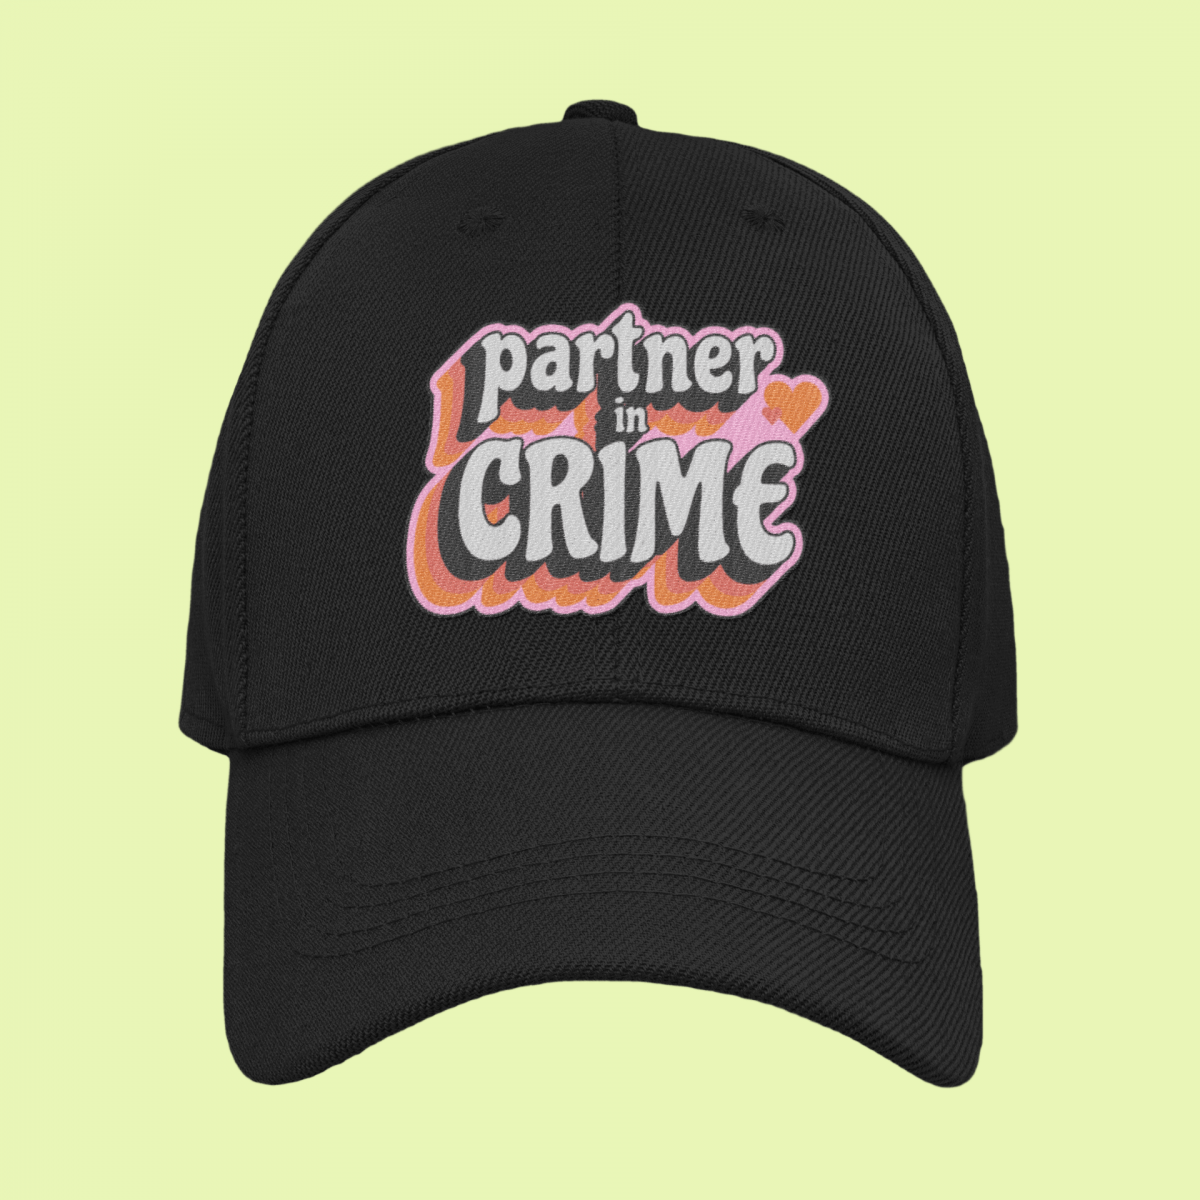 "Partner in crime"